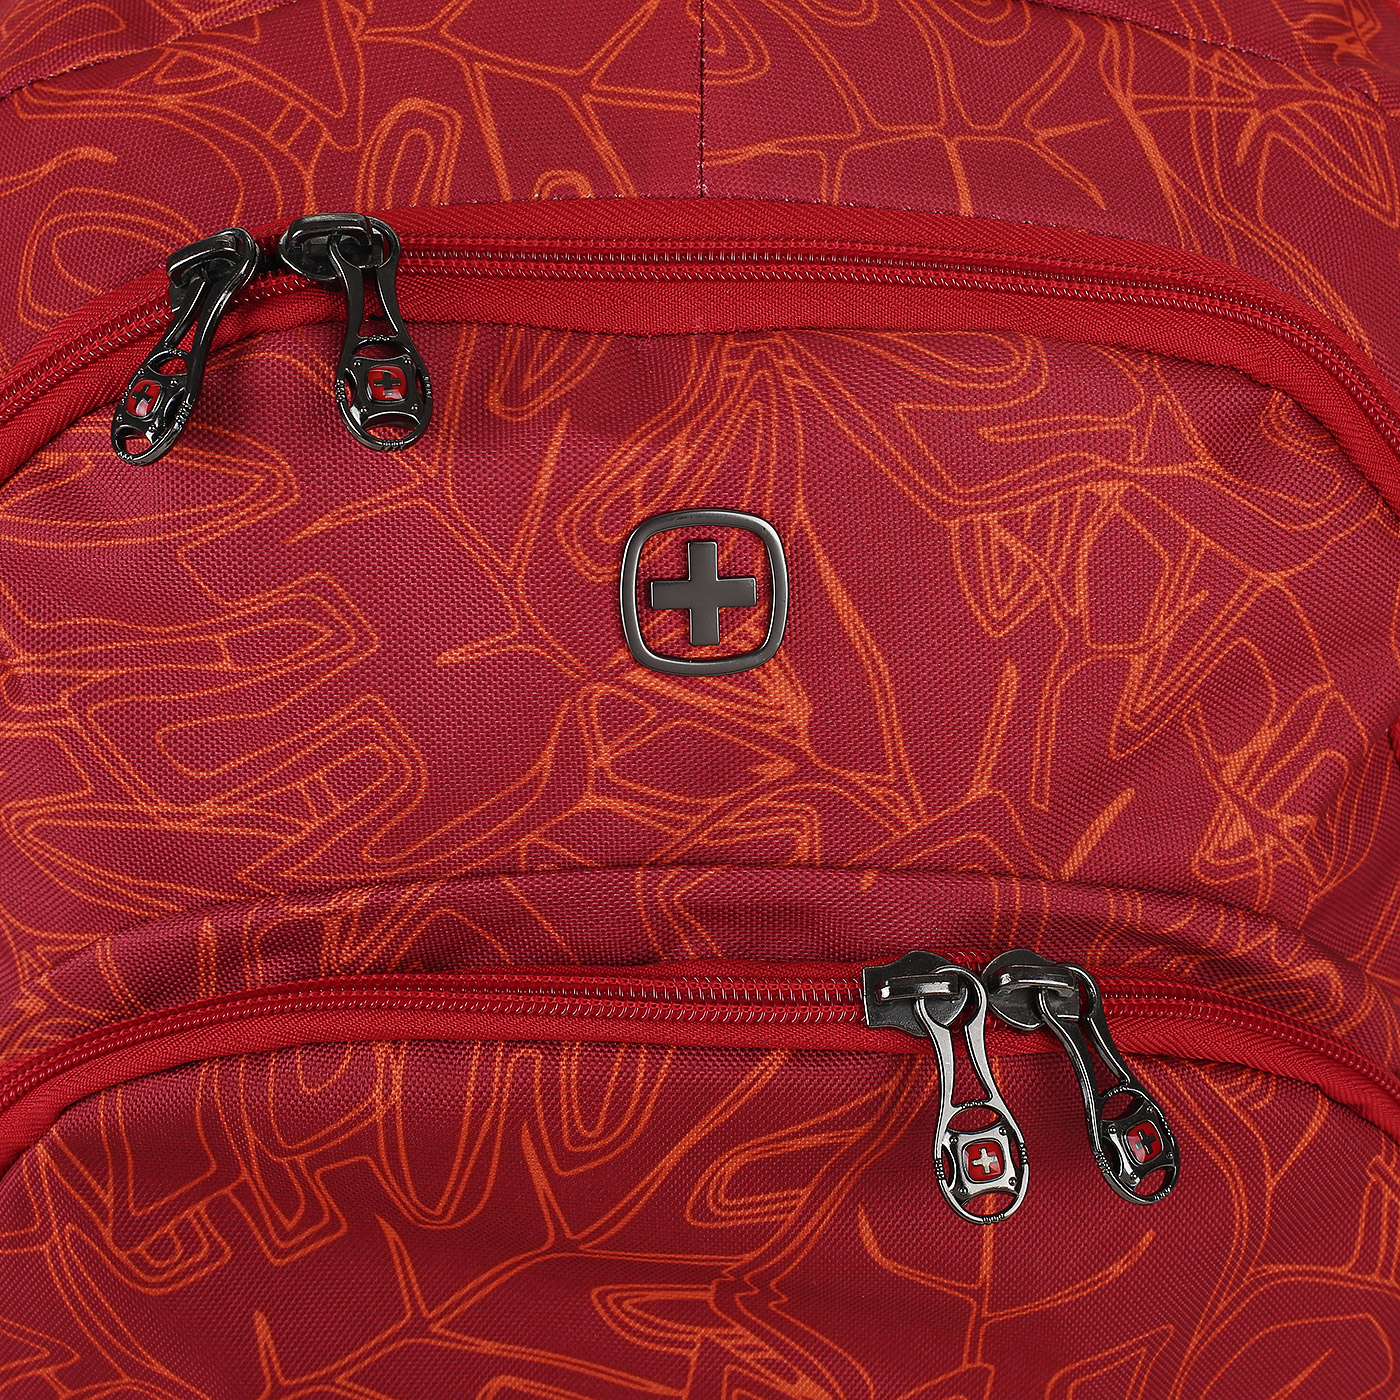 Текстильный рюкзак Wenger 